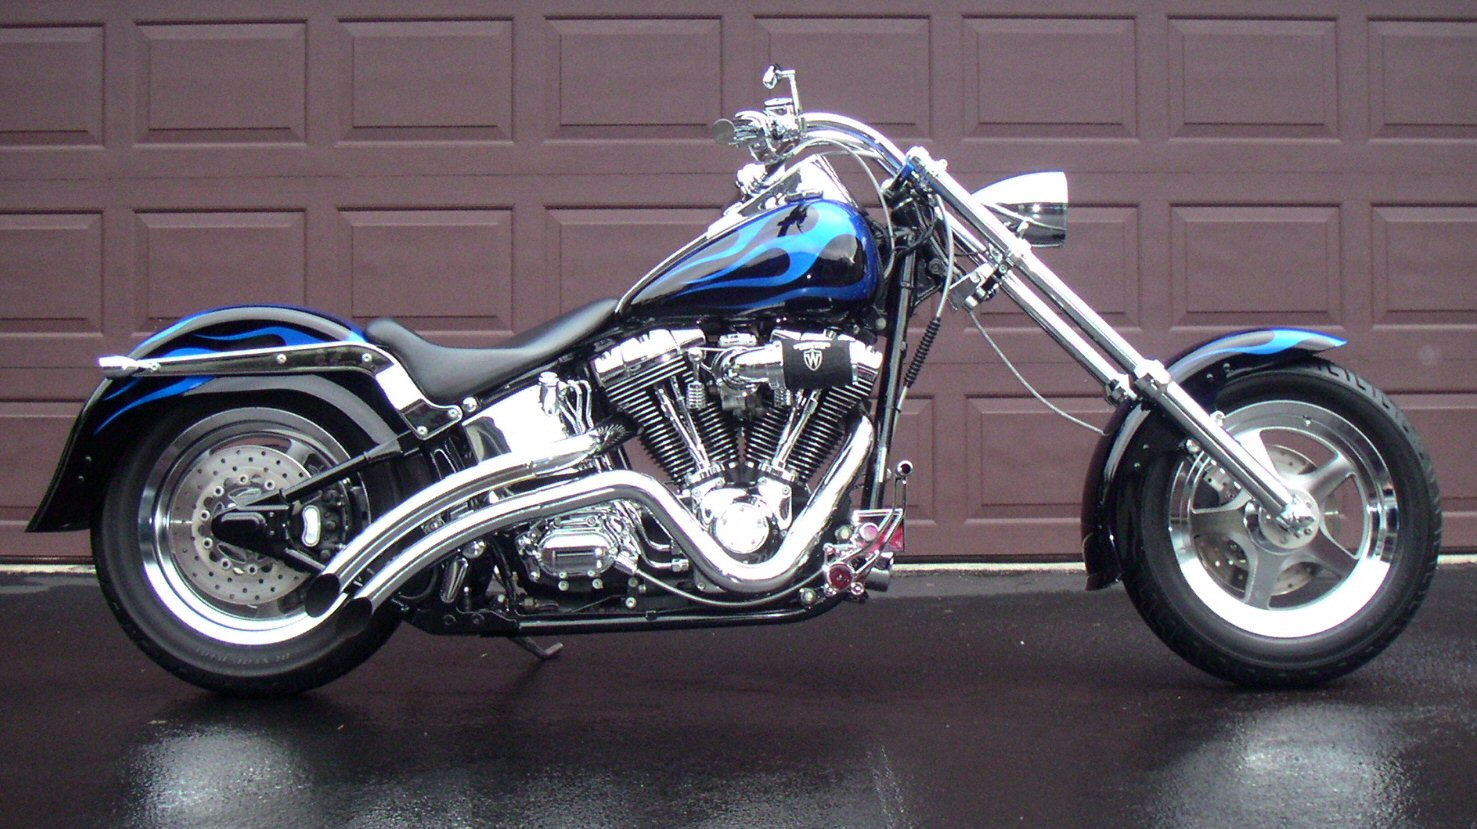  Harley Davidson Chopper Fatboy Free HD Wallpaper